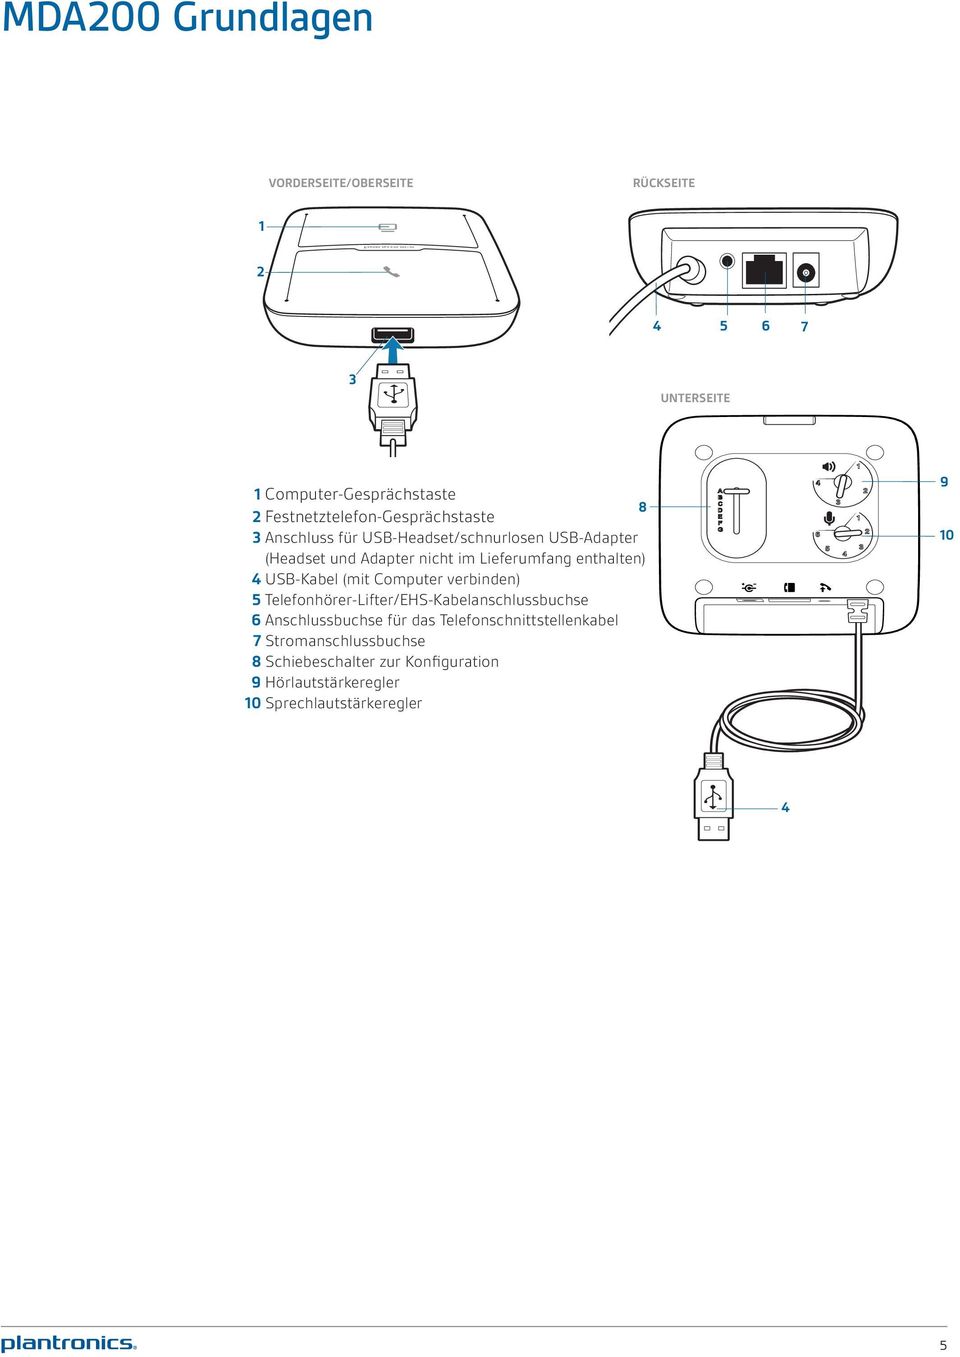 Lieferumfang enthalten) 4 USB-Kabel (mit Computer verbinden) 5 Telefonhörer-Lifter/EHS-Kabelanschlussbuchse 6